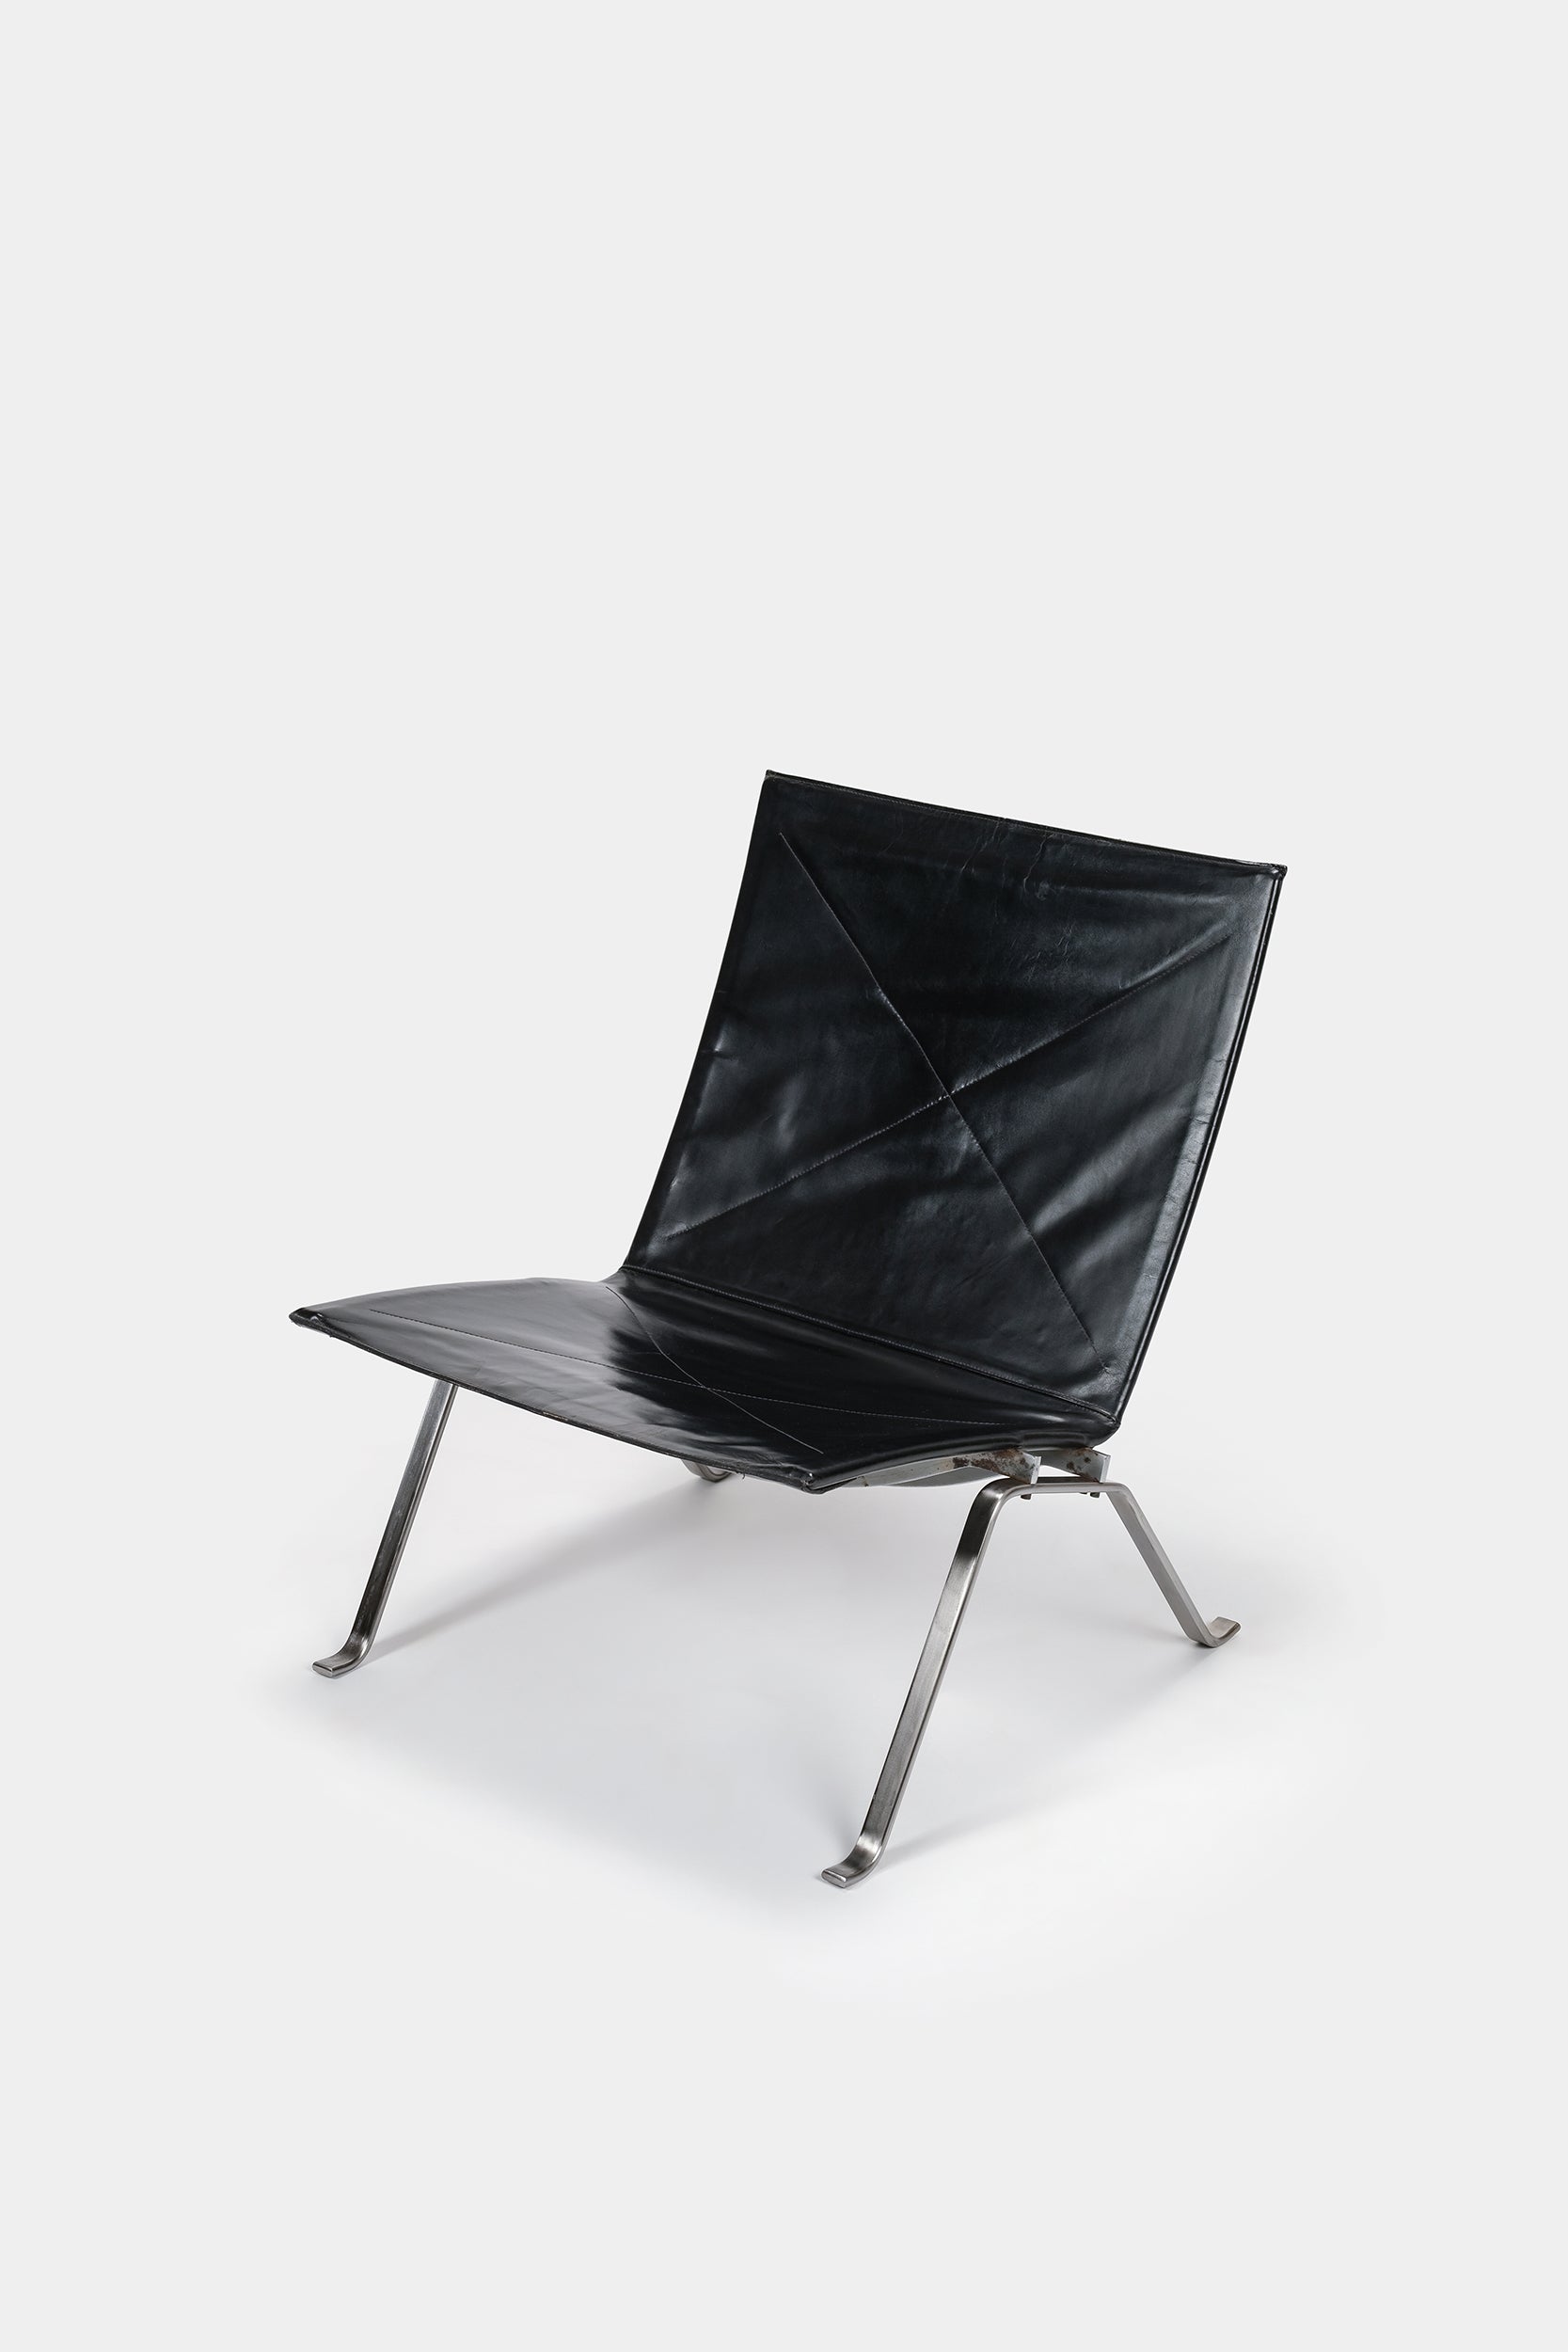 Poul Kjaerholm, Lounge Chair PK22, 1956